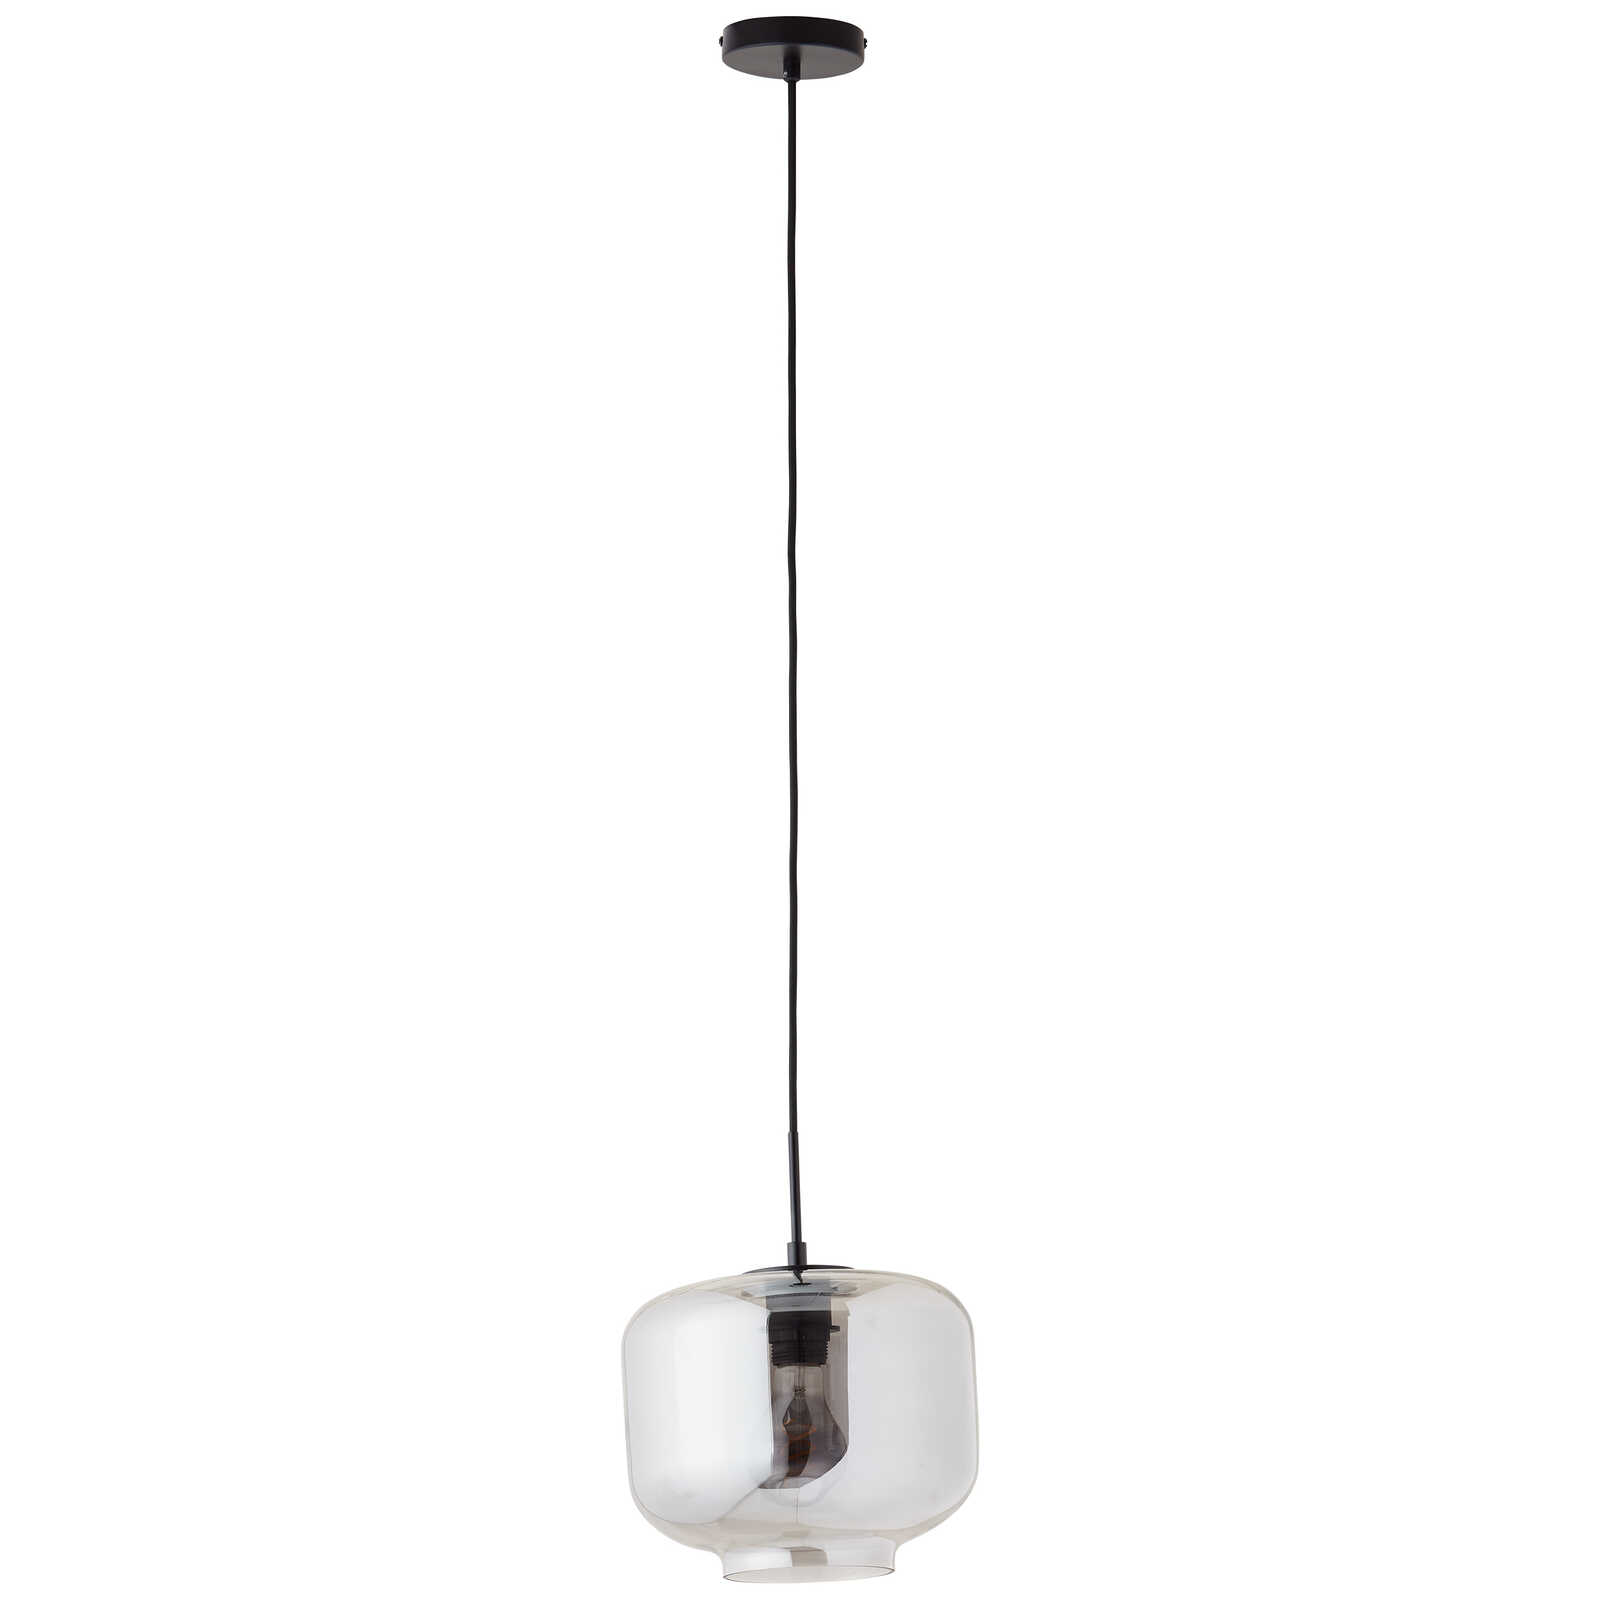             Glazen hanglamp - Keno 2 - Grijs
        